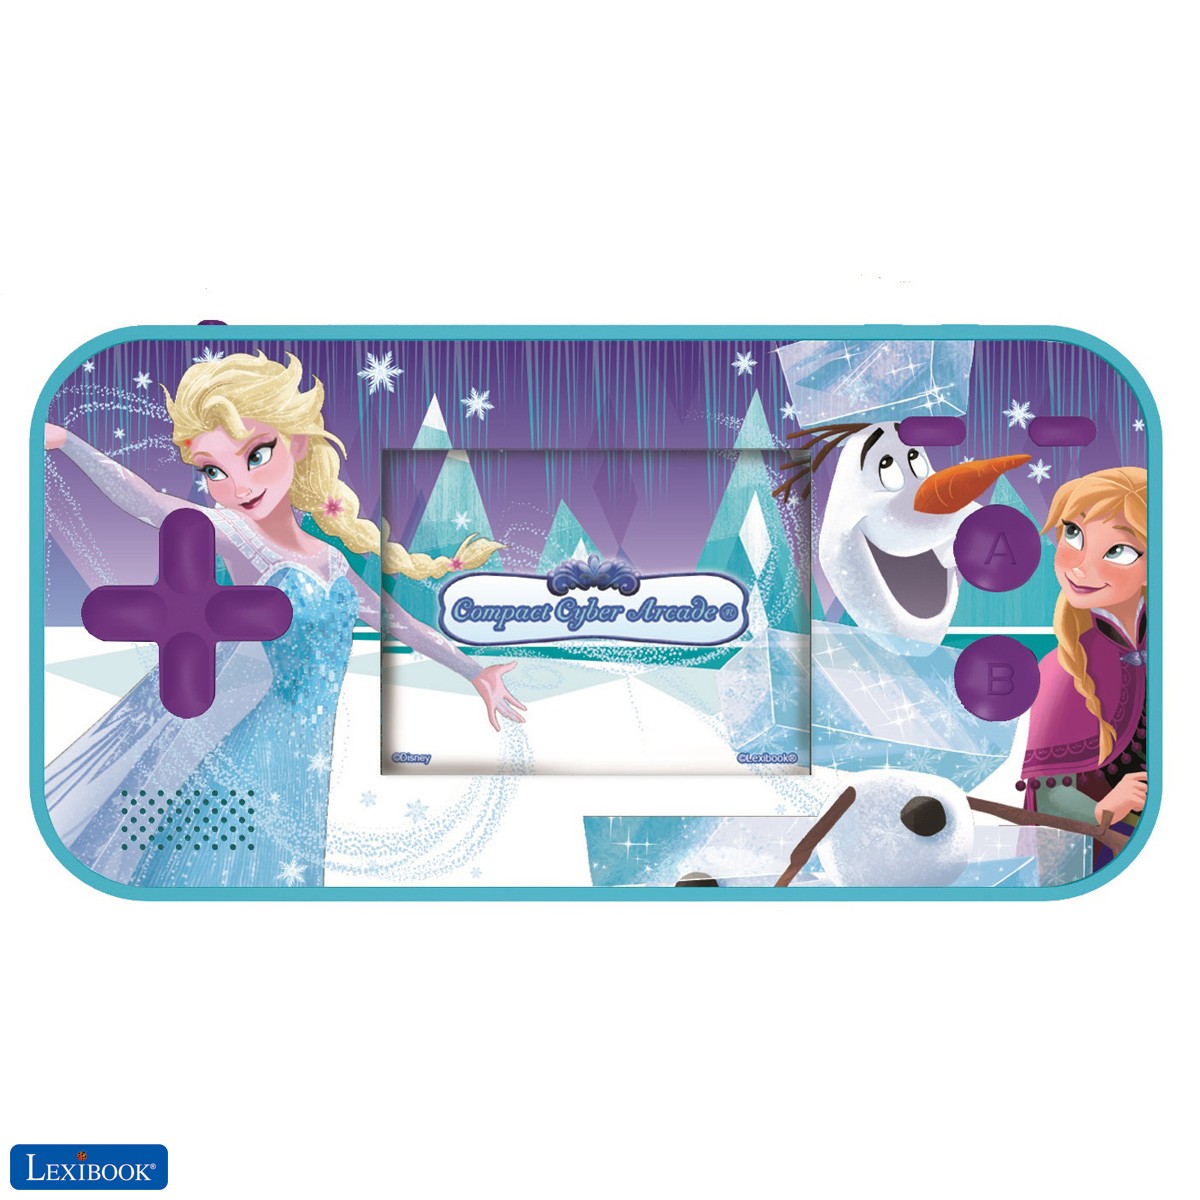 Disney Frozen Die Eiskönigin Elsa Compact Cyber Arcade Tragbare Spielkonsole,